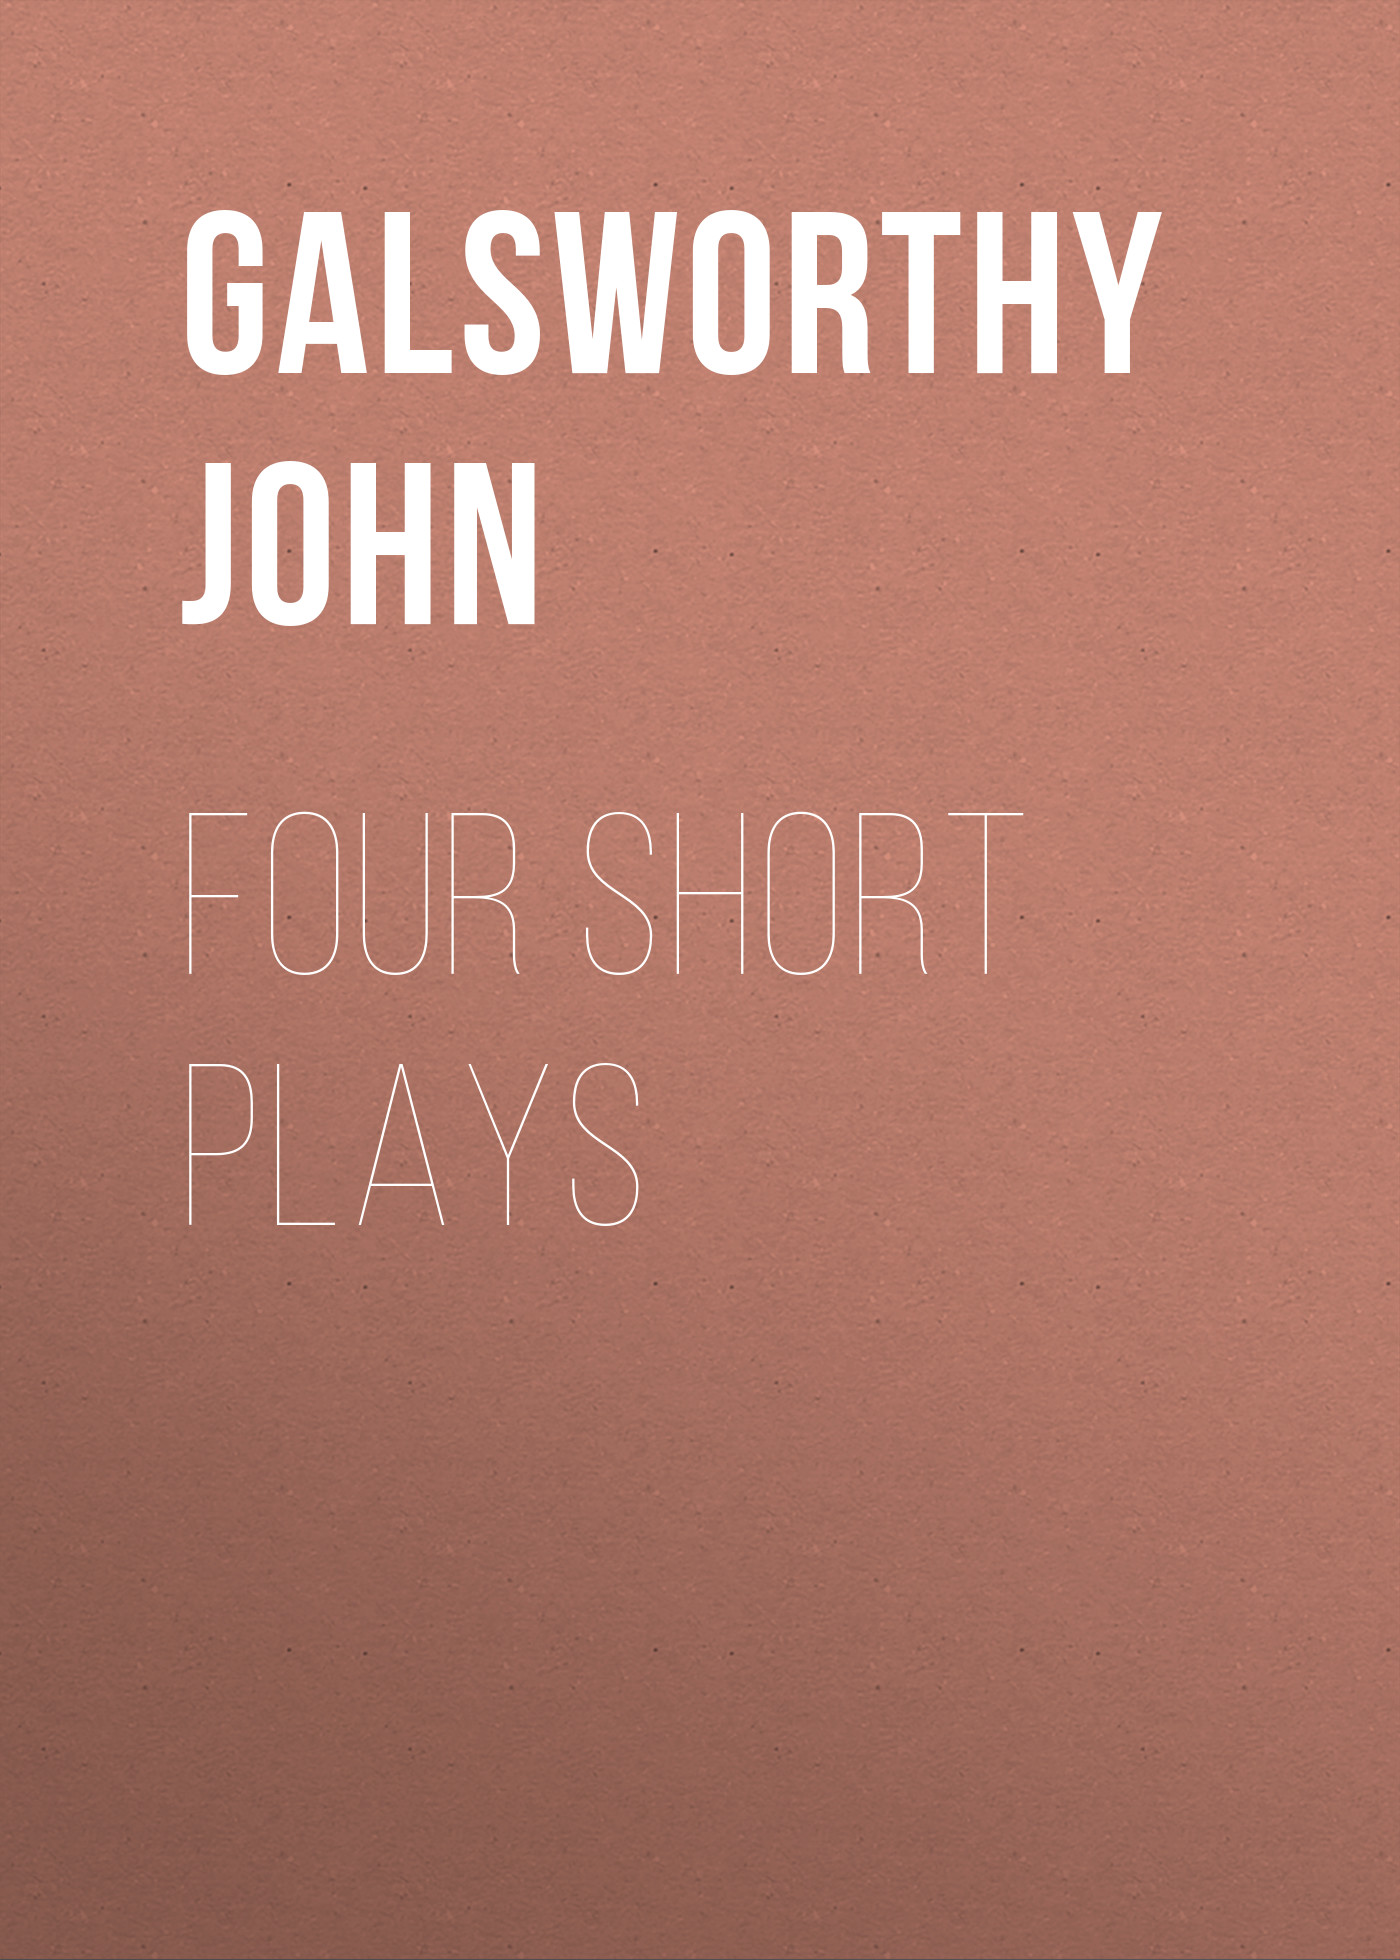 Книга Four Short Plays из серии , созданная John Galsworthy, может относится к жанру Зарубежная старинная литература, Зарубежная классика. Стоимость электронной книги Four Short Plays с идентификатором 25202447 составляет 0 руб.